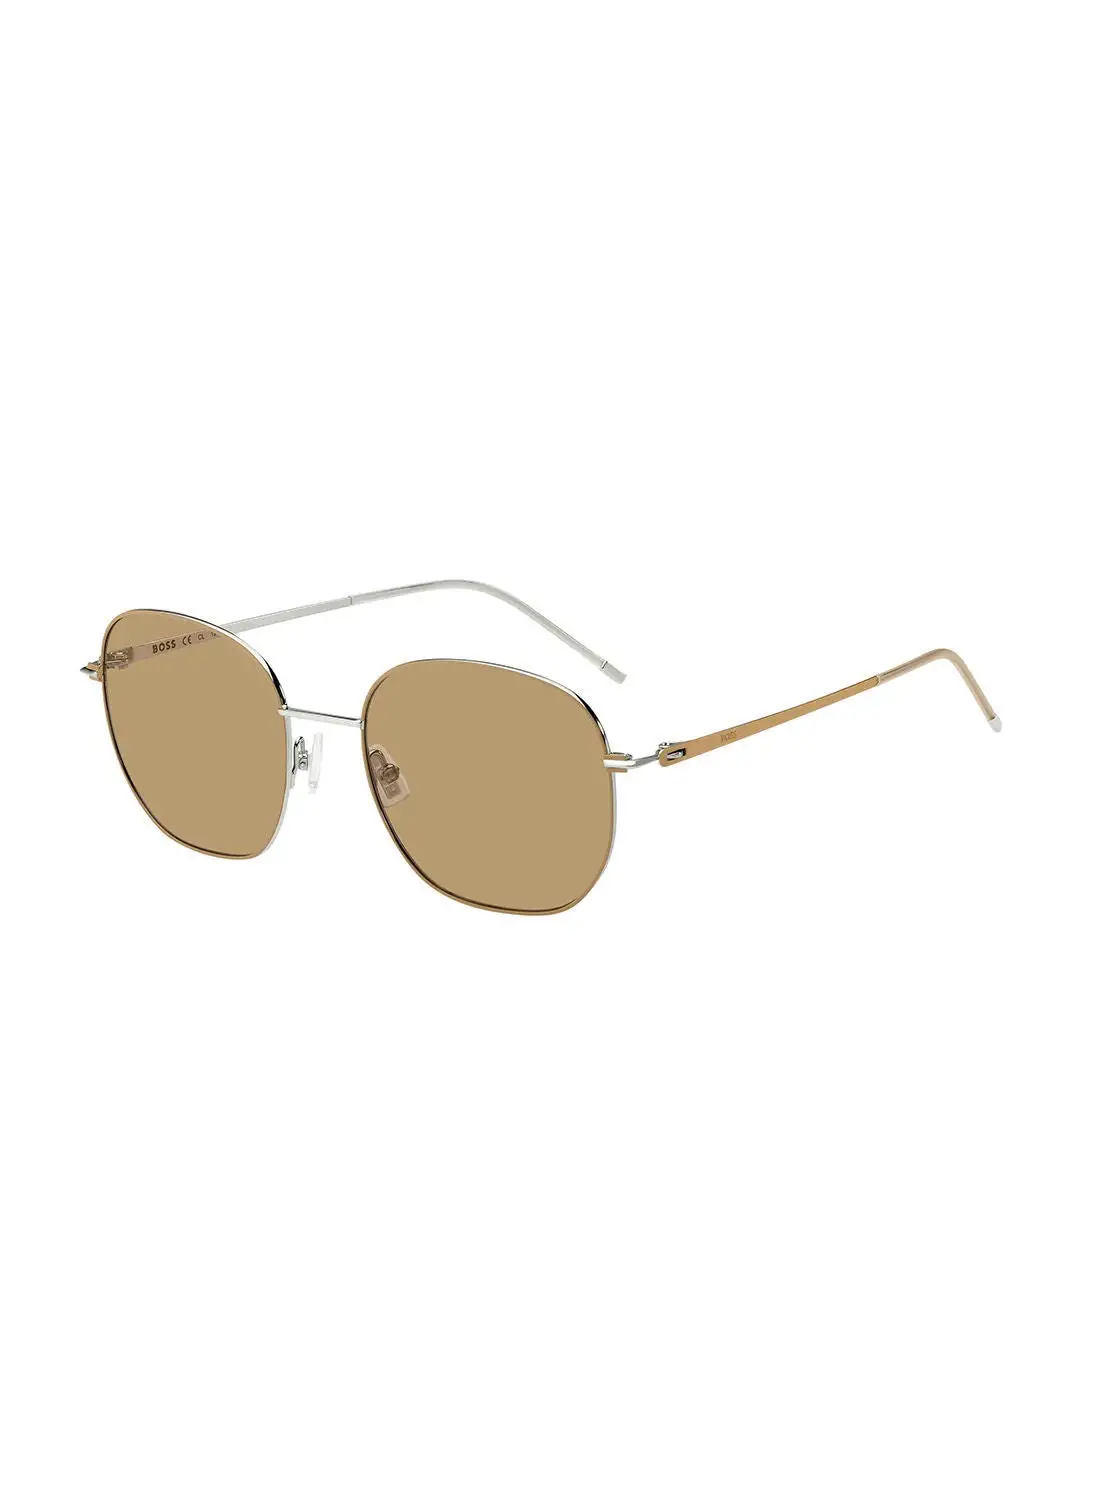 HUGO BOSS Women's UV Protection Octagonal Sunglasses - Boss 1462/S Pld Beige 54 - Lens Size: 54 Mm